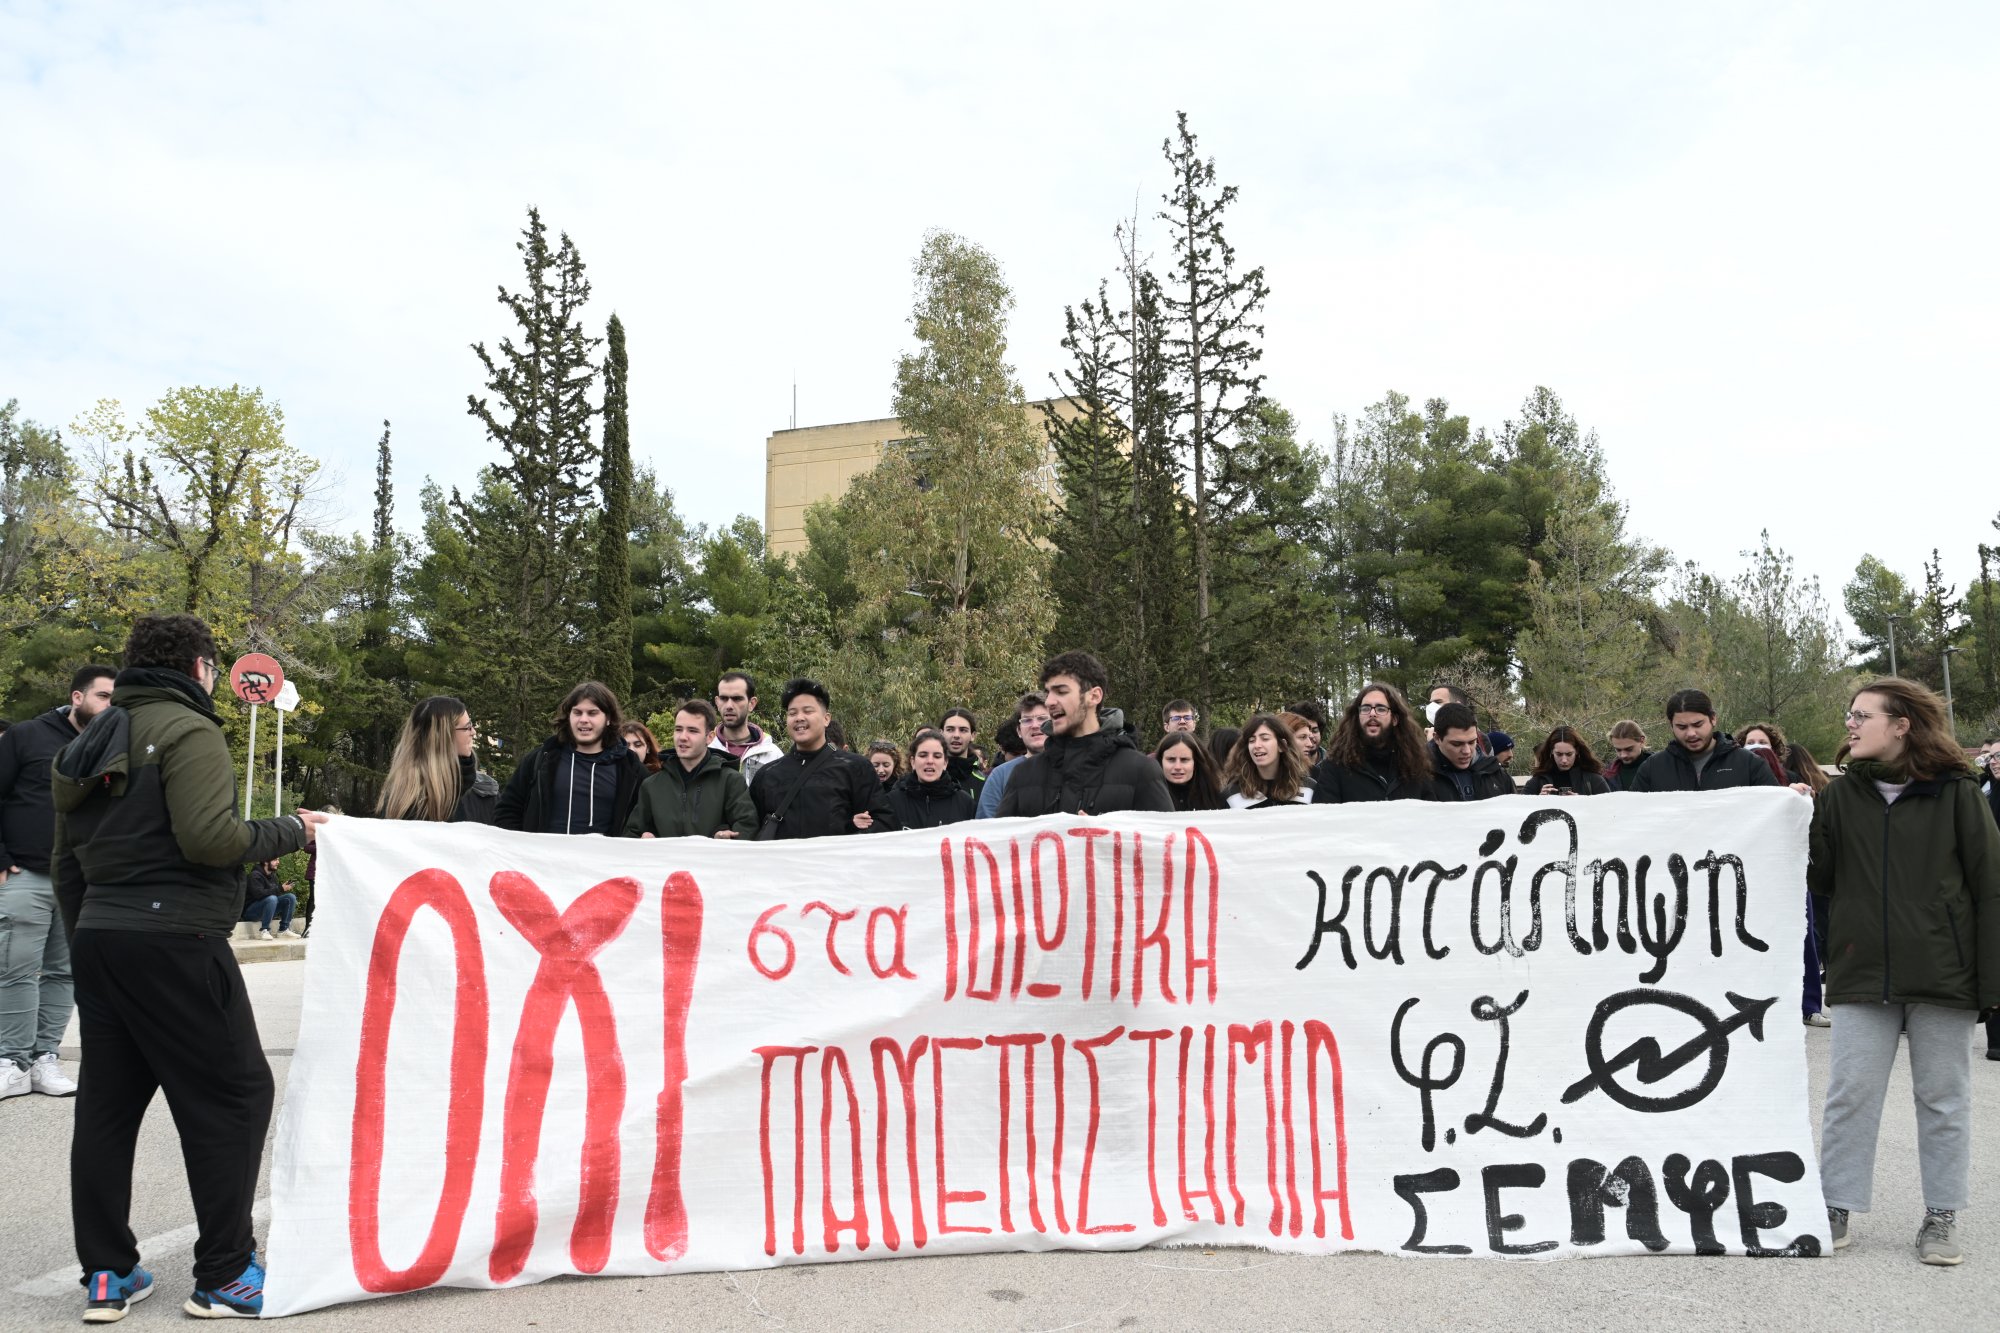 Ο Δικηγορικός Σύλλογος Πειραιά καταδικάζει την «ποινικοποίηση των φοιτητικών κινητοποιήσεων»